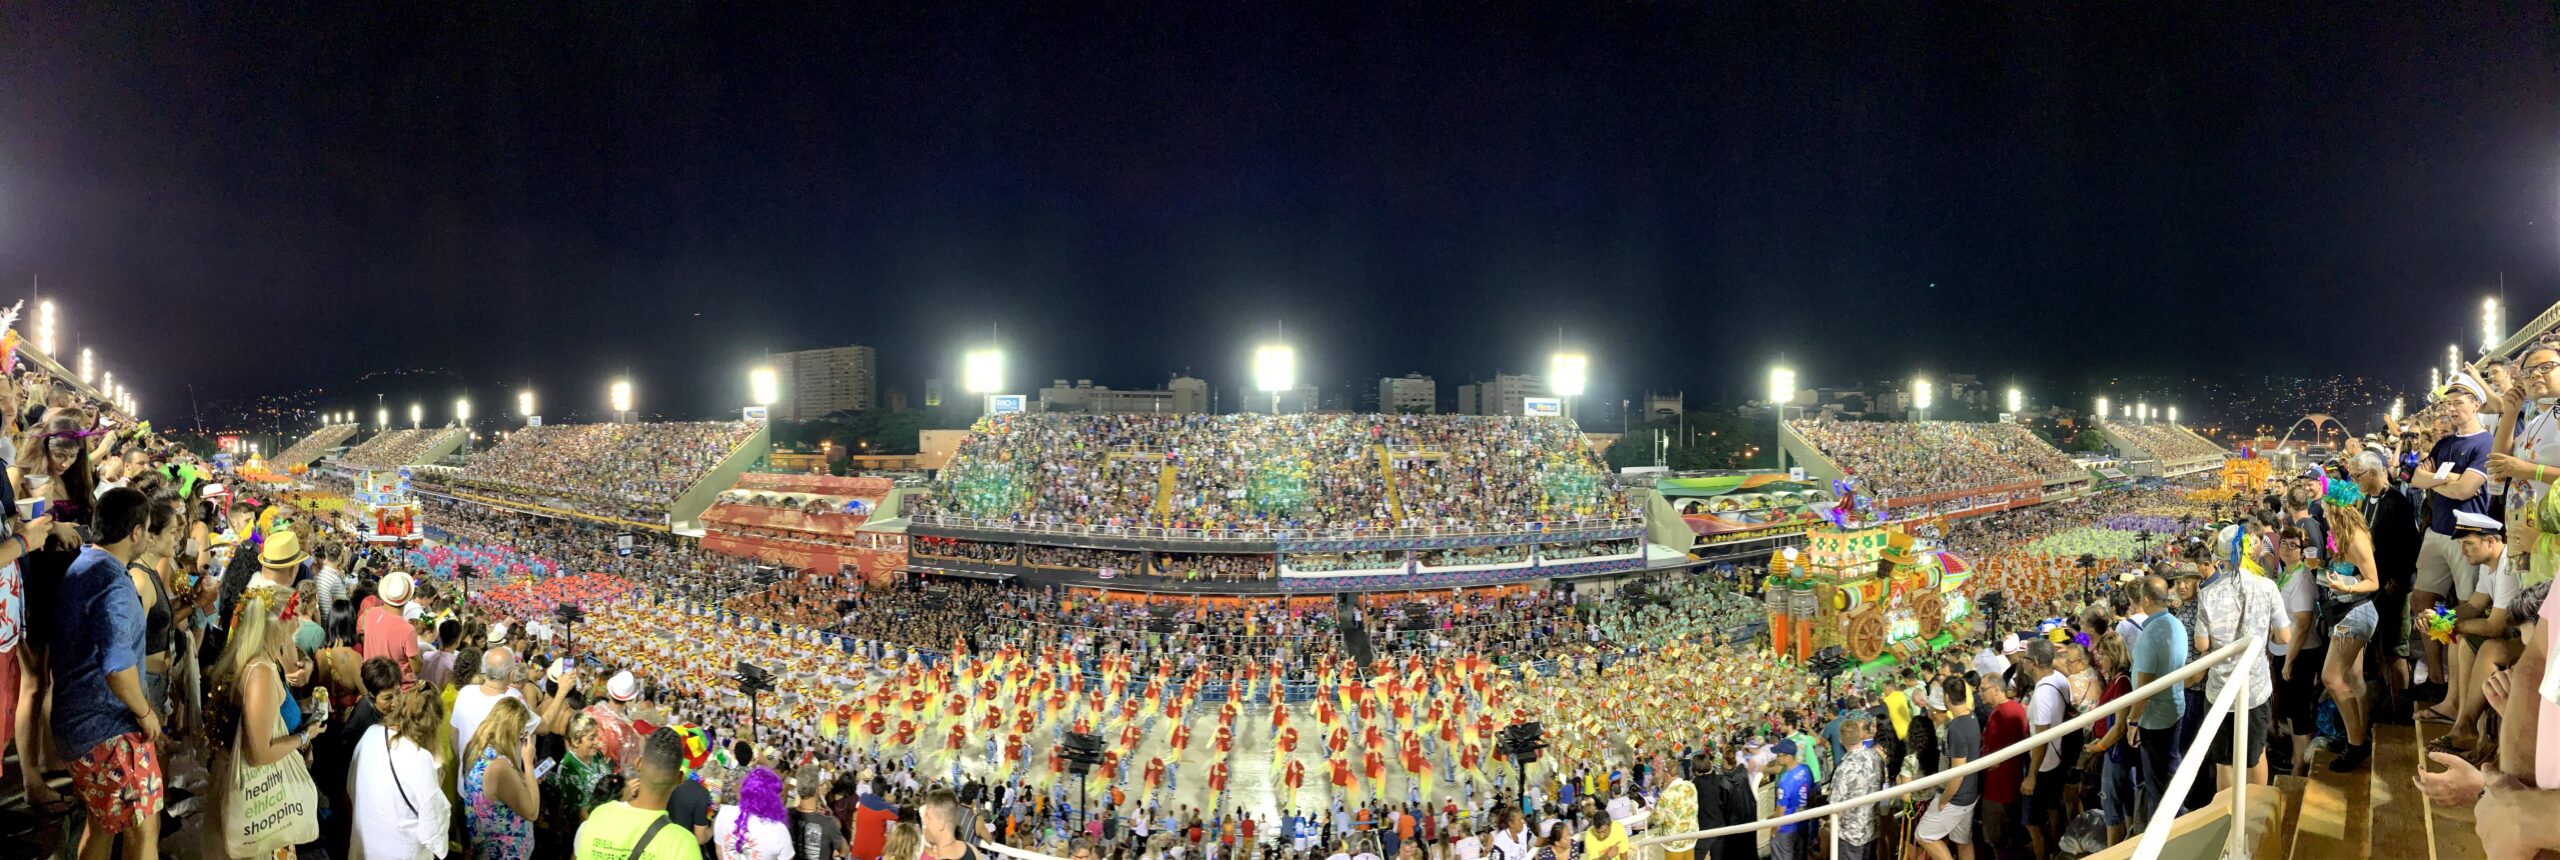 the sambadrome at Rio Carnival finals 2020